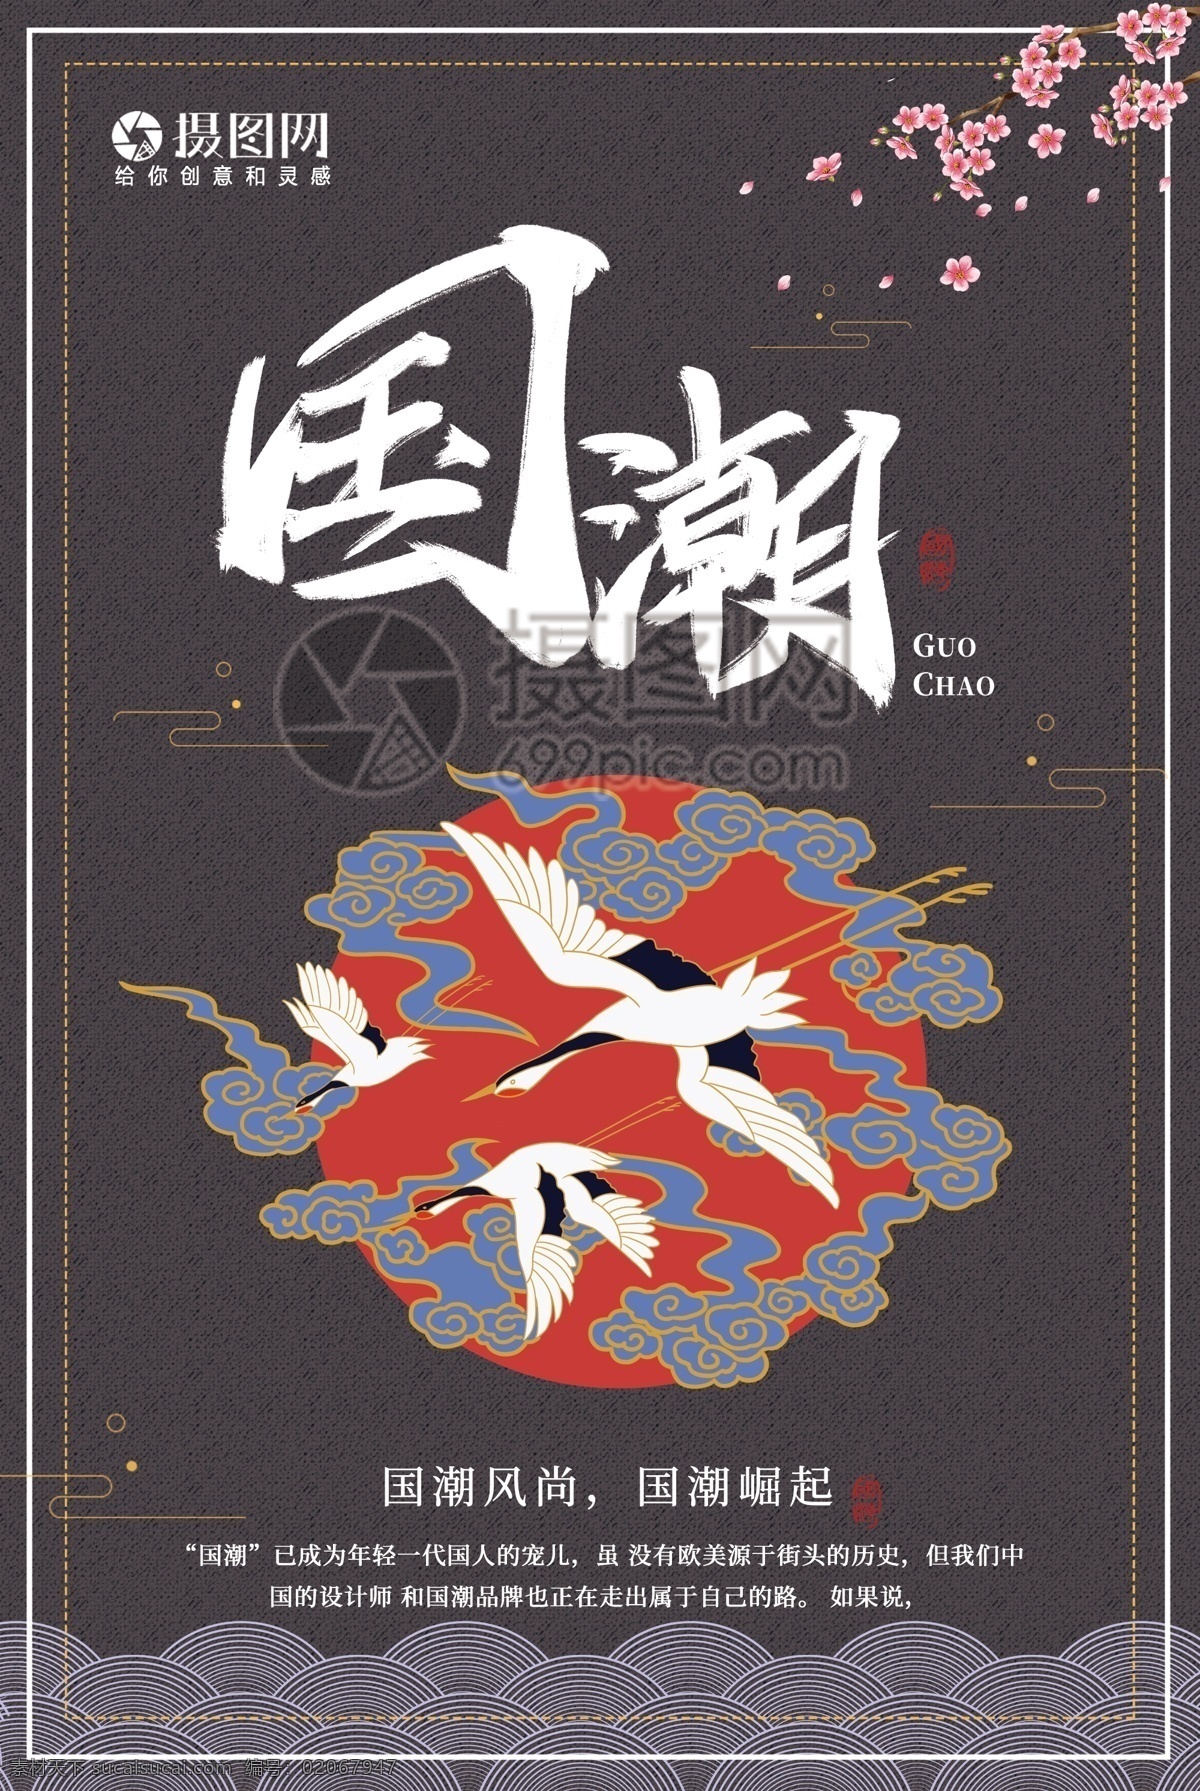 国 潮 文化 宣传海报 中国 民族文化 民族 中国文化 国风 国潮 中国范